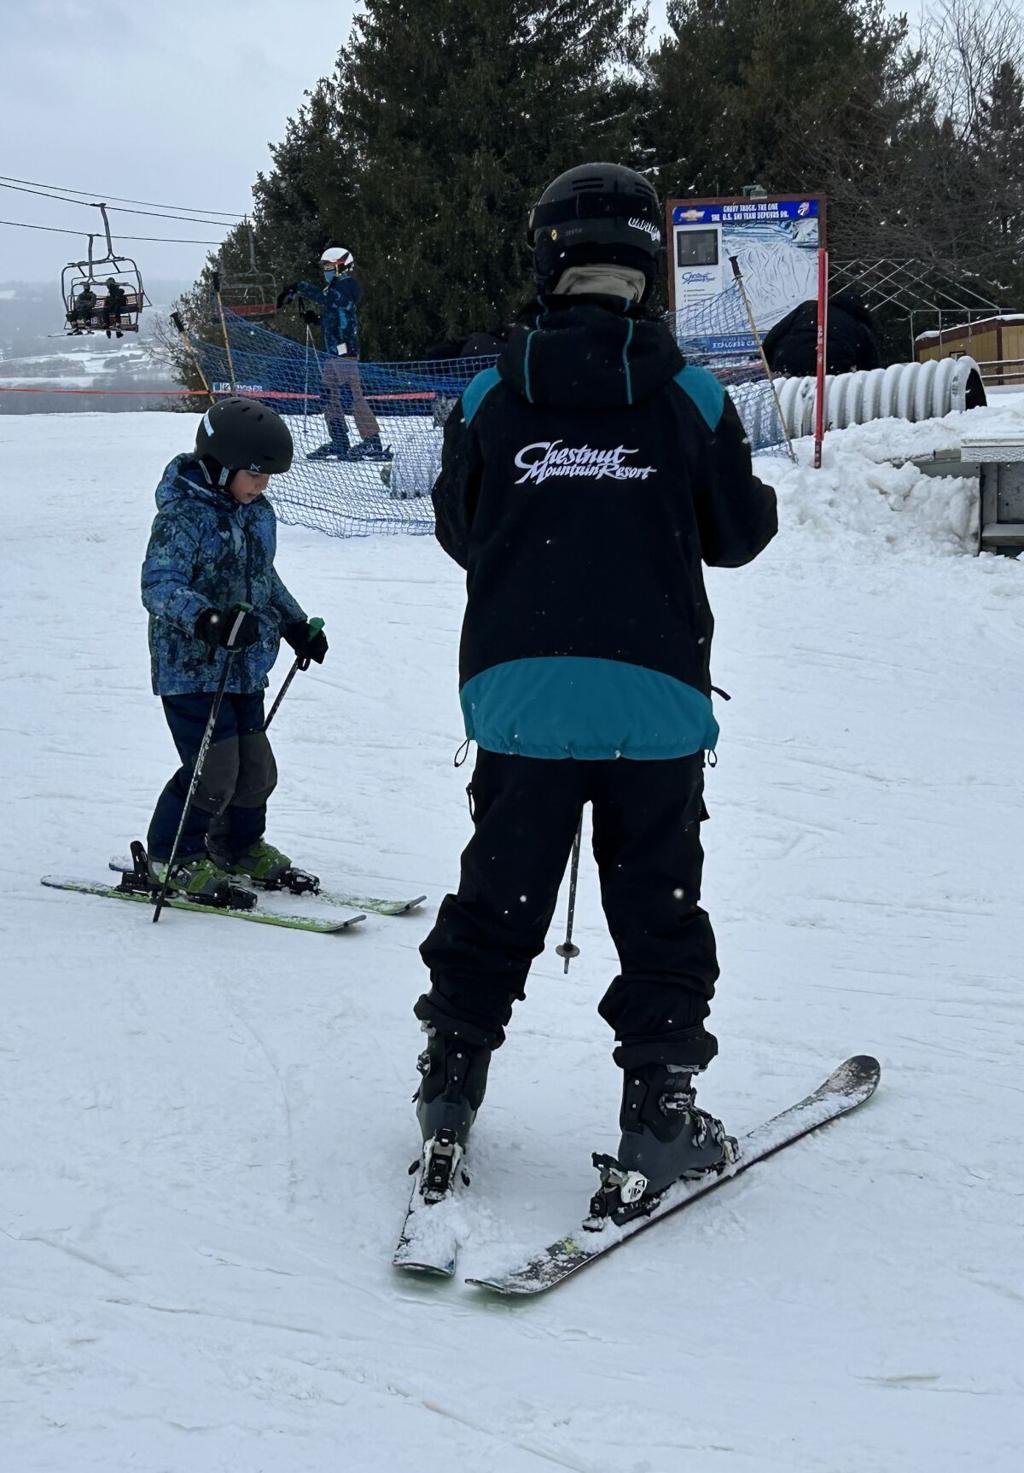 Quid Pro Snow - Ski Area Management